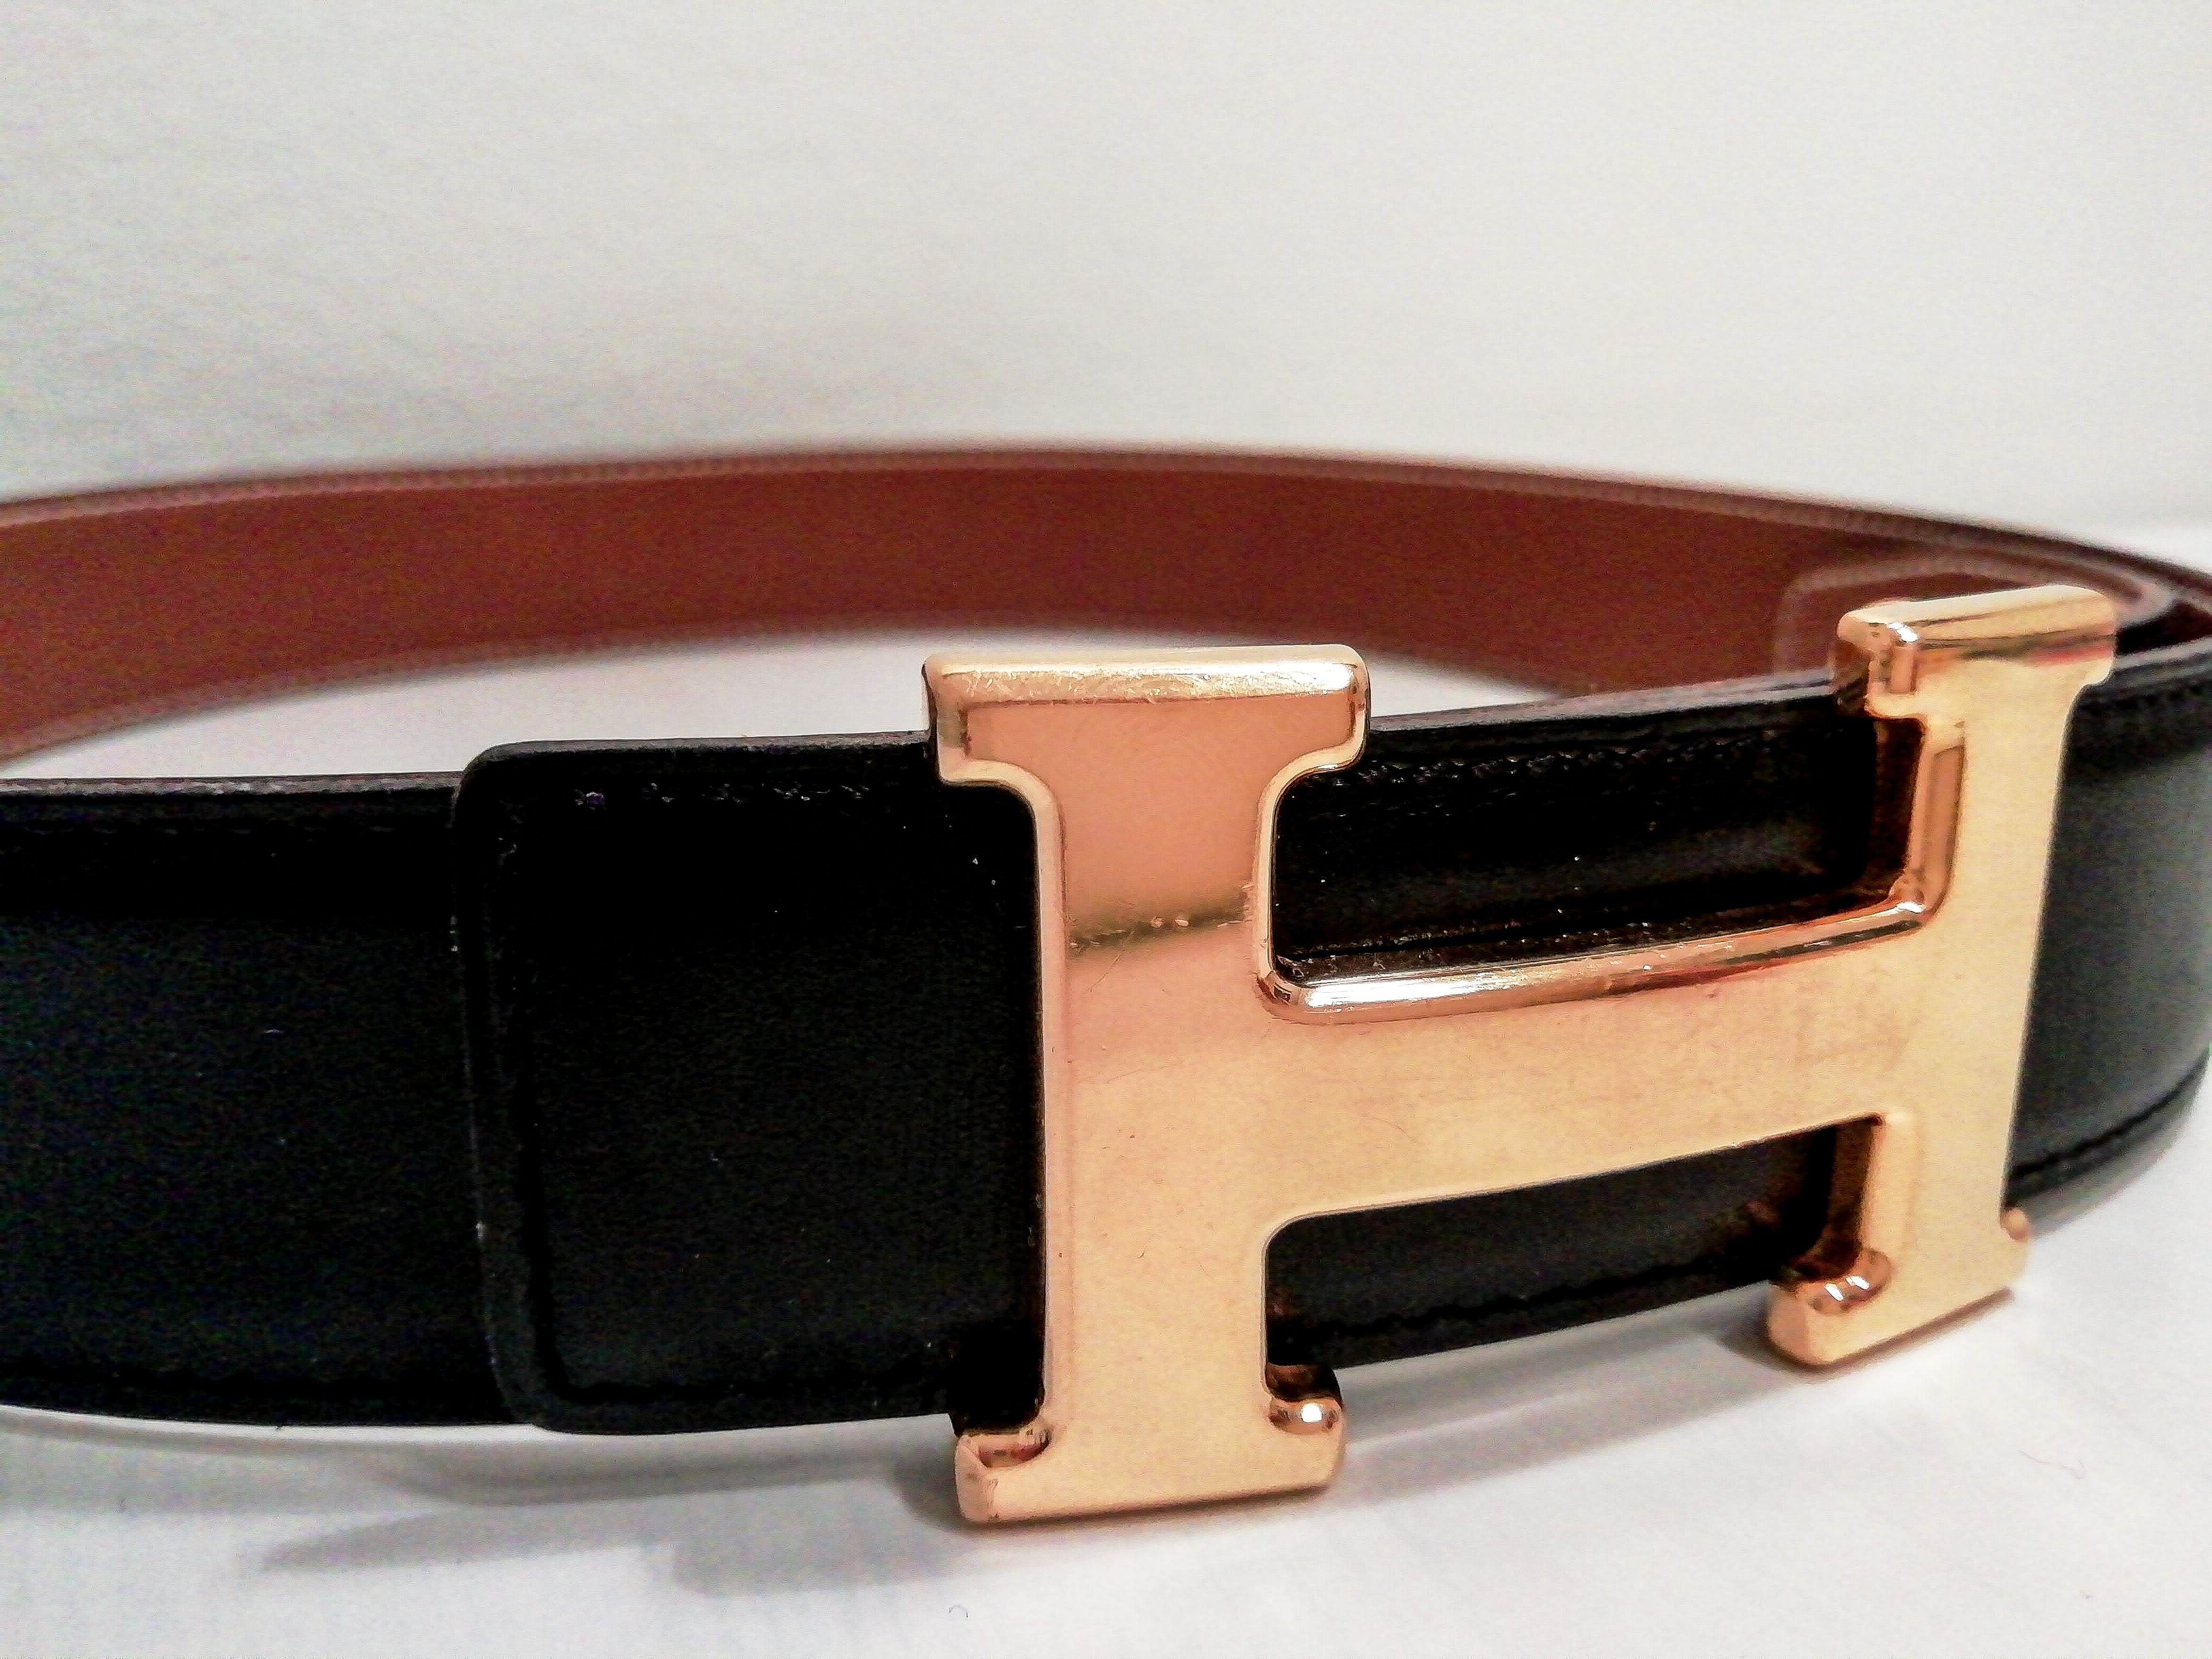 Review: Hermes H belt – Buy the goddamn bag